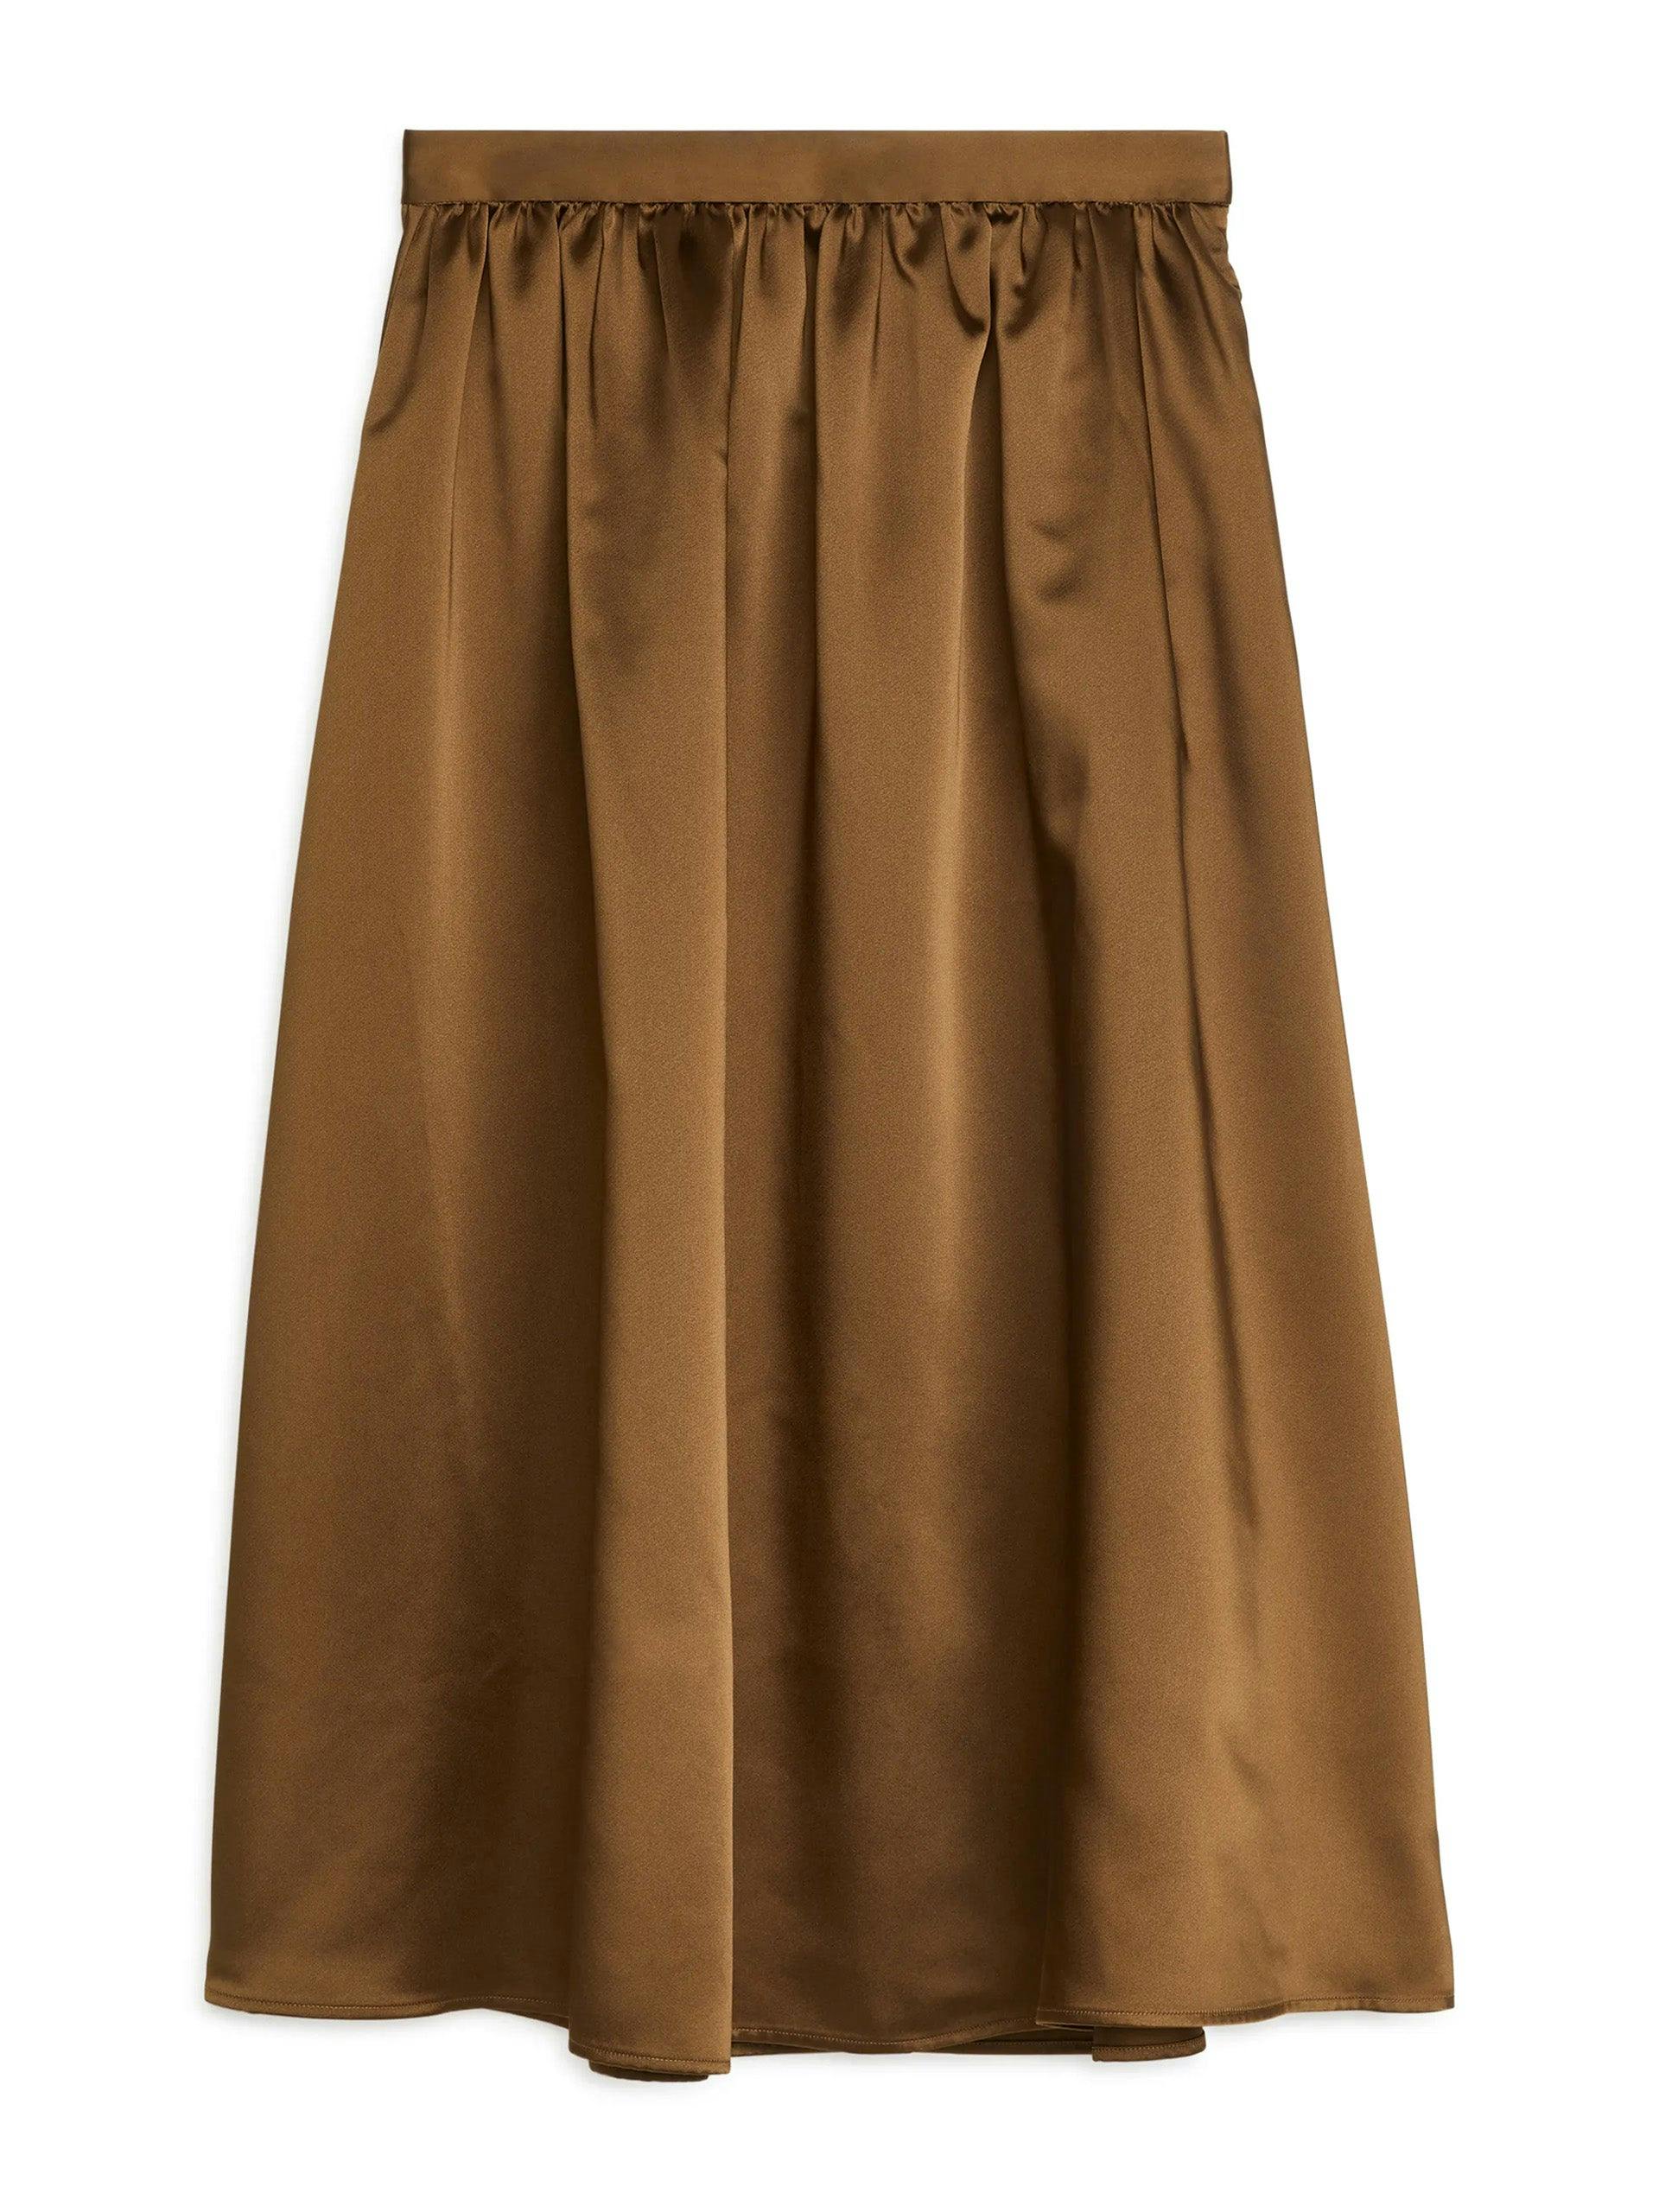 Taffeta brown skirt